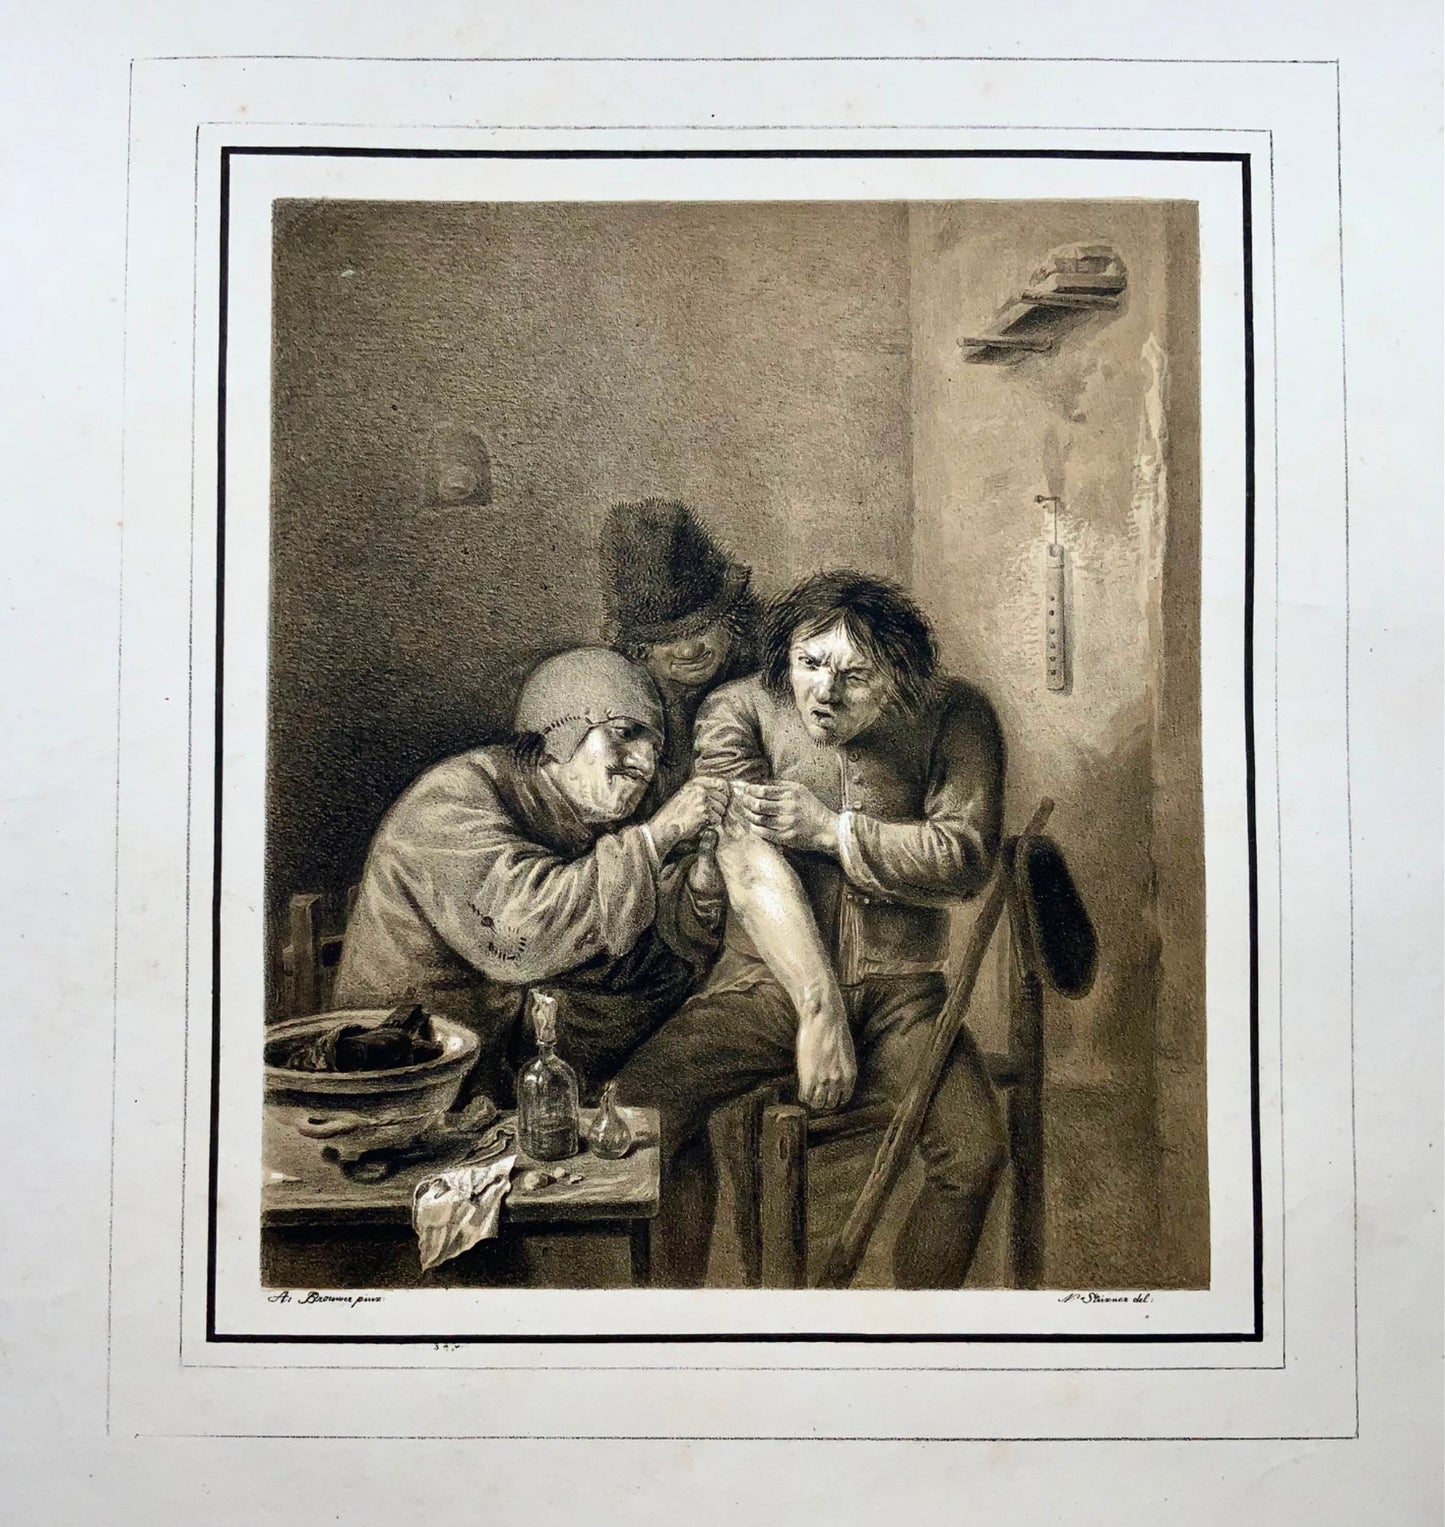 1810c Medicina, Chirurgo, N. Strixner secondo A. Brouwer, incunaboli di litografia 